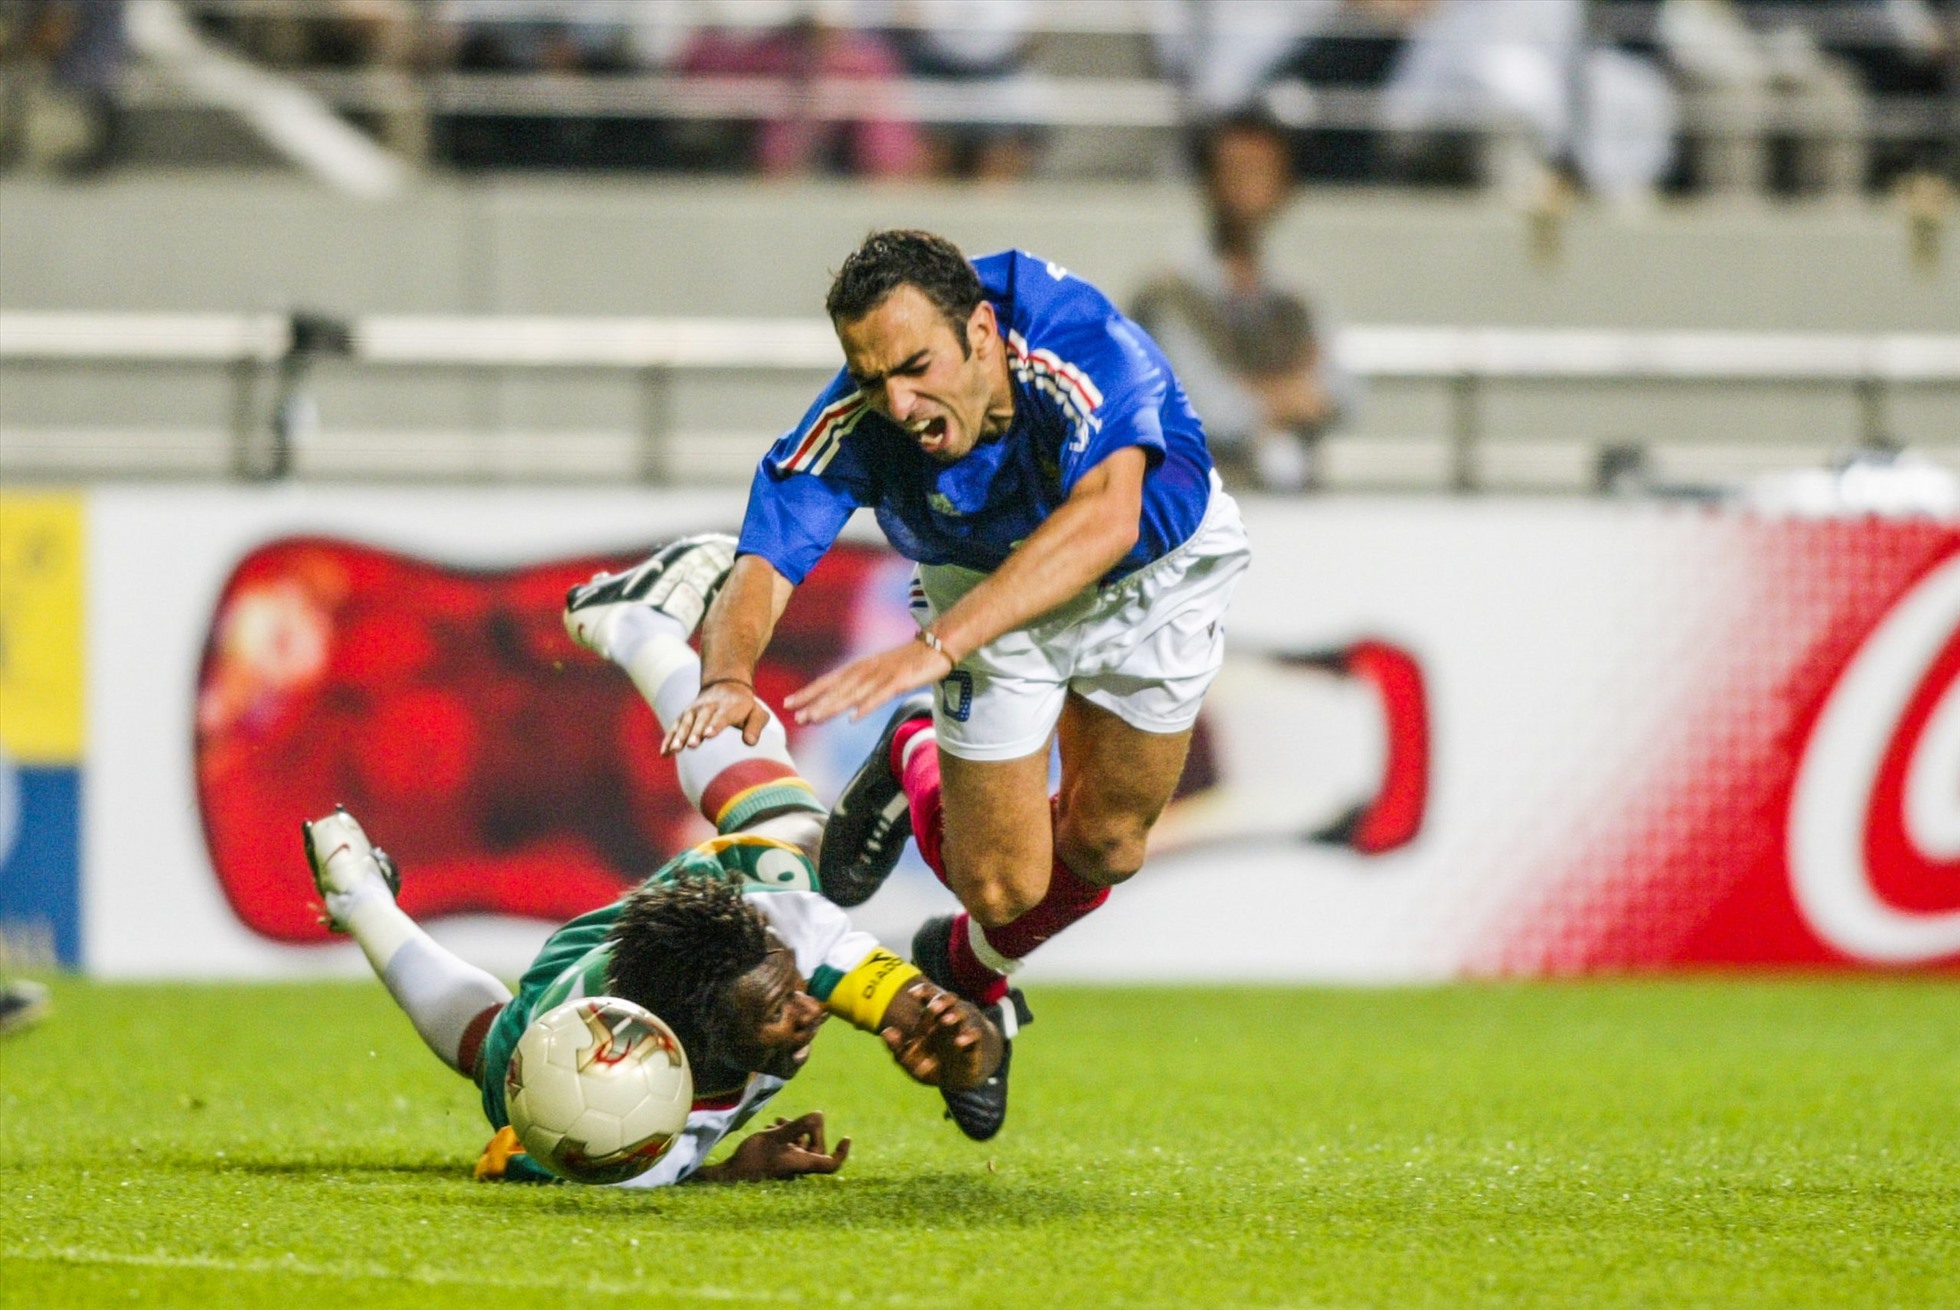 Tuyển Pháp từng nhận cú sốc thua 0-1 trước Senegal ở trận khai mạc World Cup 2002. Ảnh: FIFA